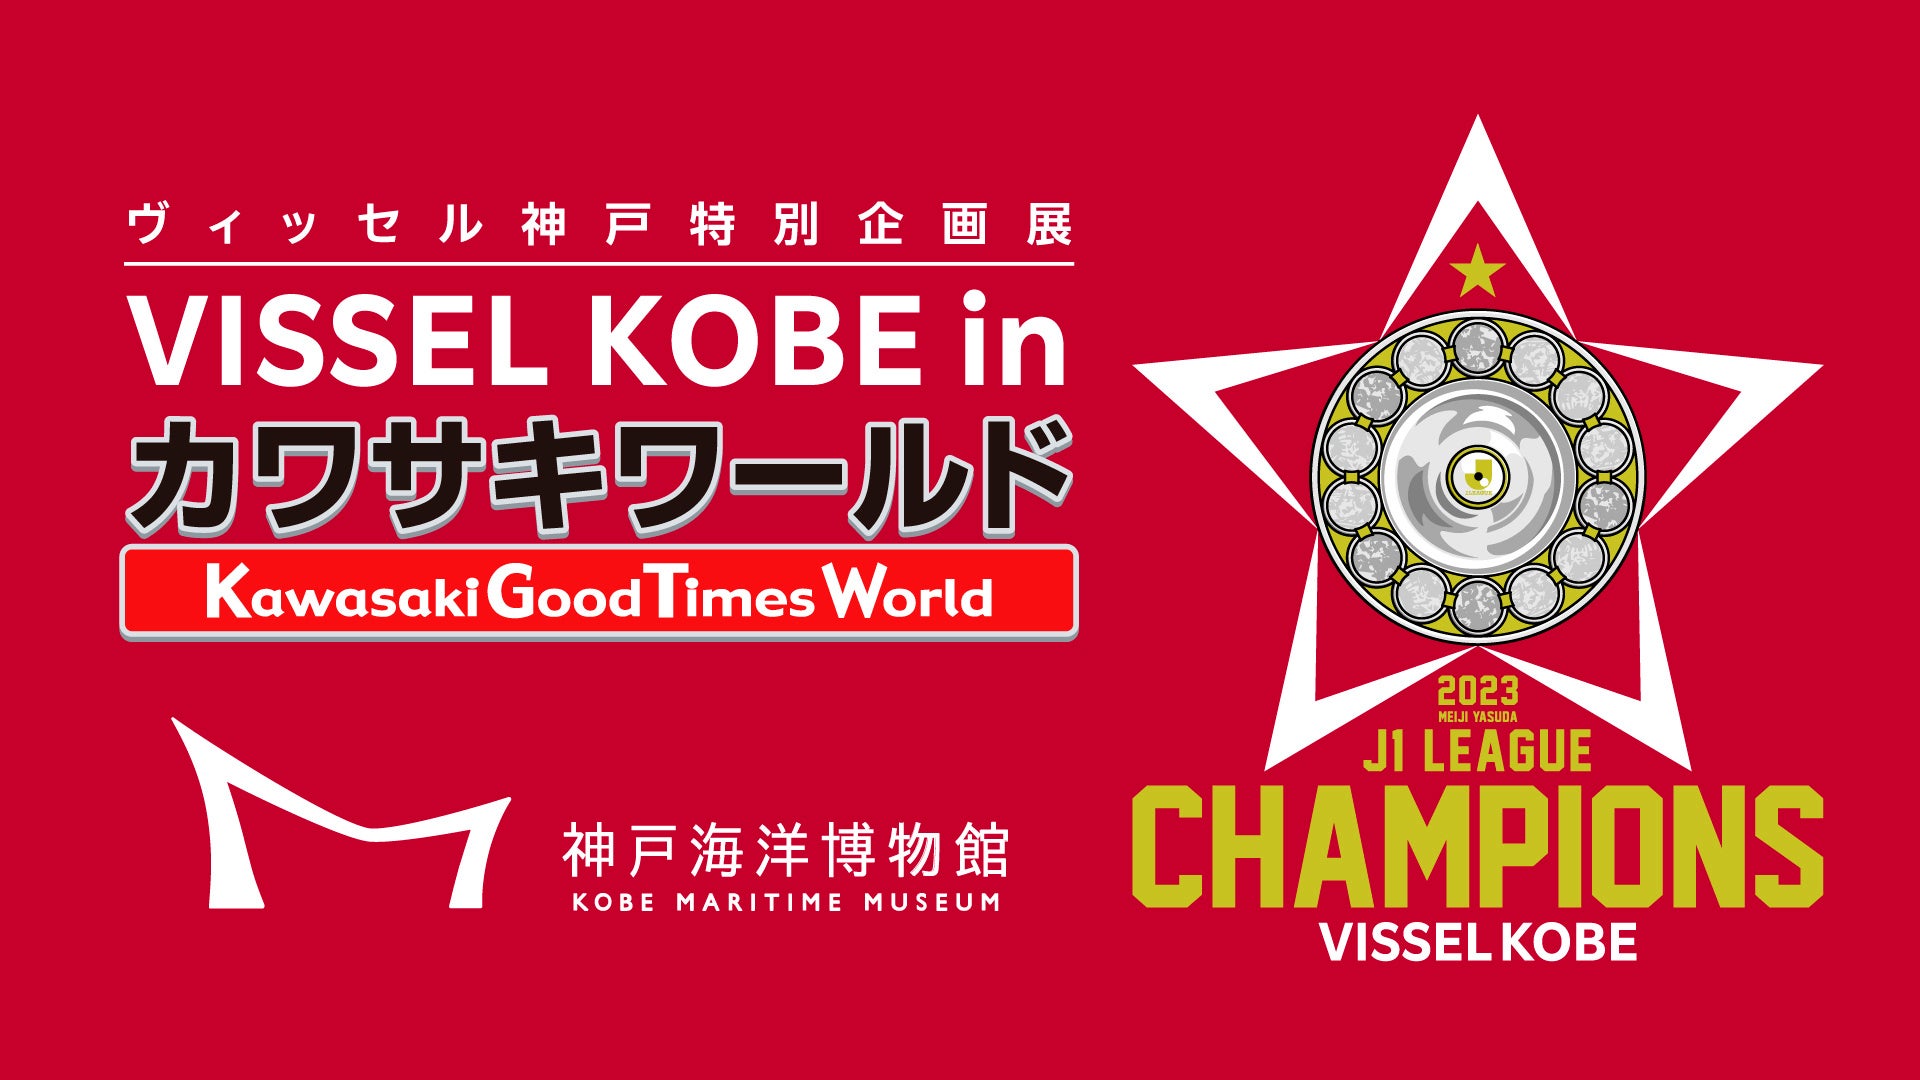 ヴィッセル神戸特別企画展「VISSEL KOBE in カワサキワールド」開催